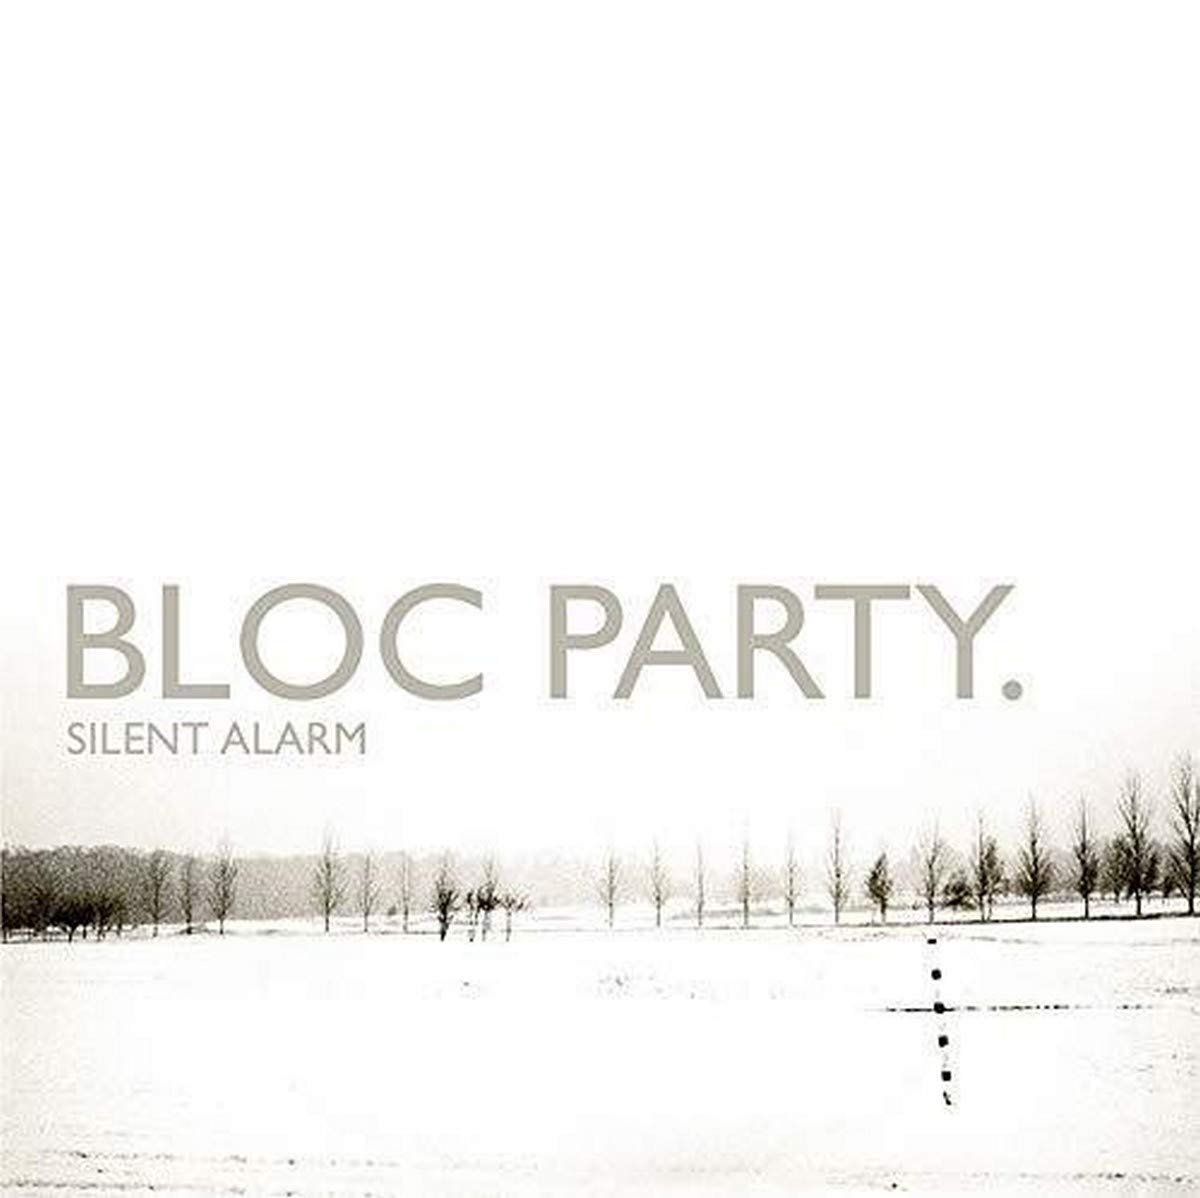 Our Favorite Albums Part 3: "Silent Alarm" by Bloc Party